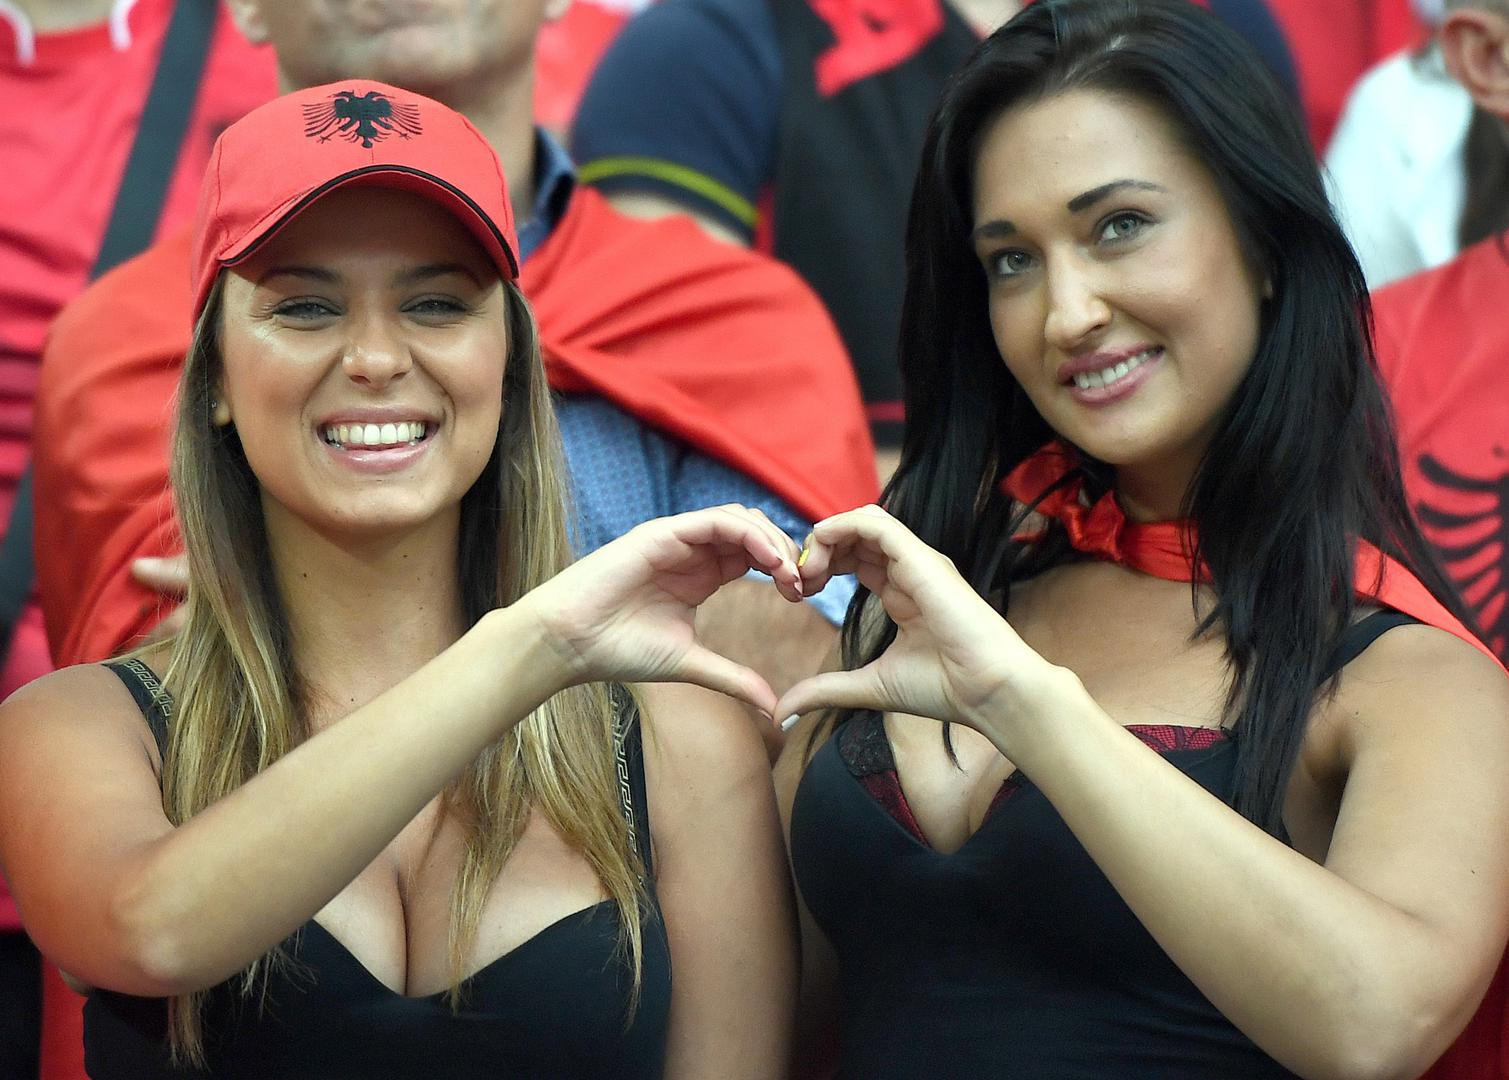 Albanske navijačice na Euru 2016. godine plijenile su pozornost, bile su meta brojnih fotografa